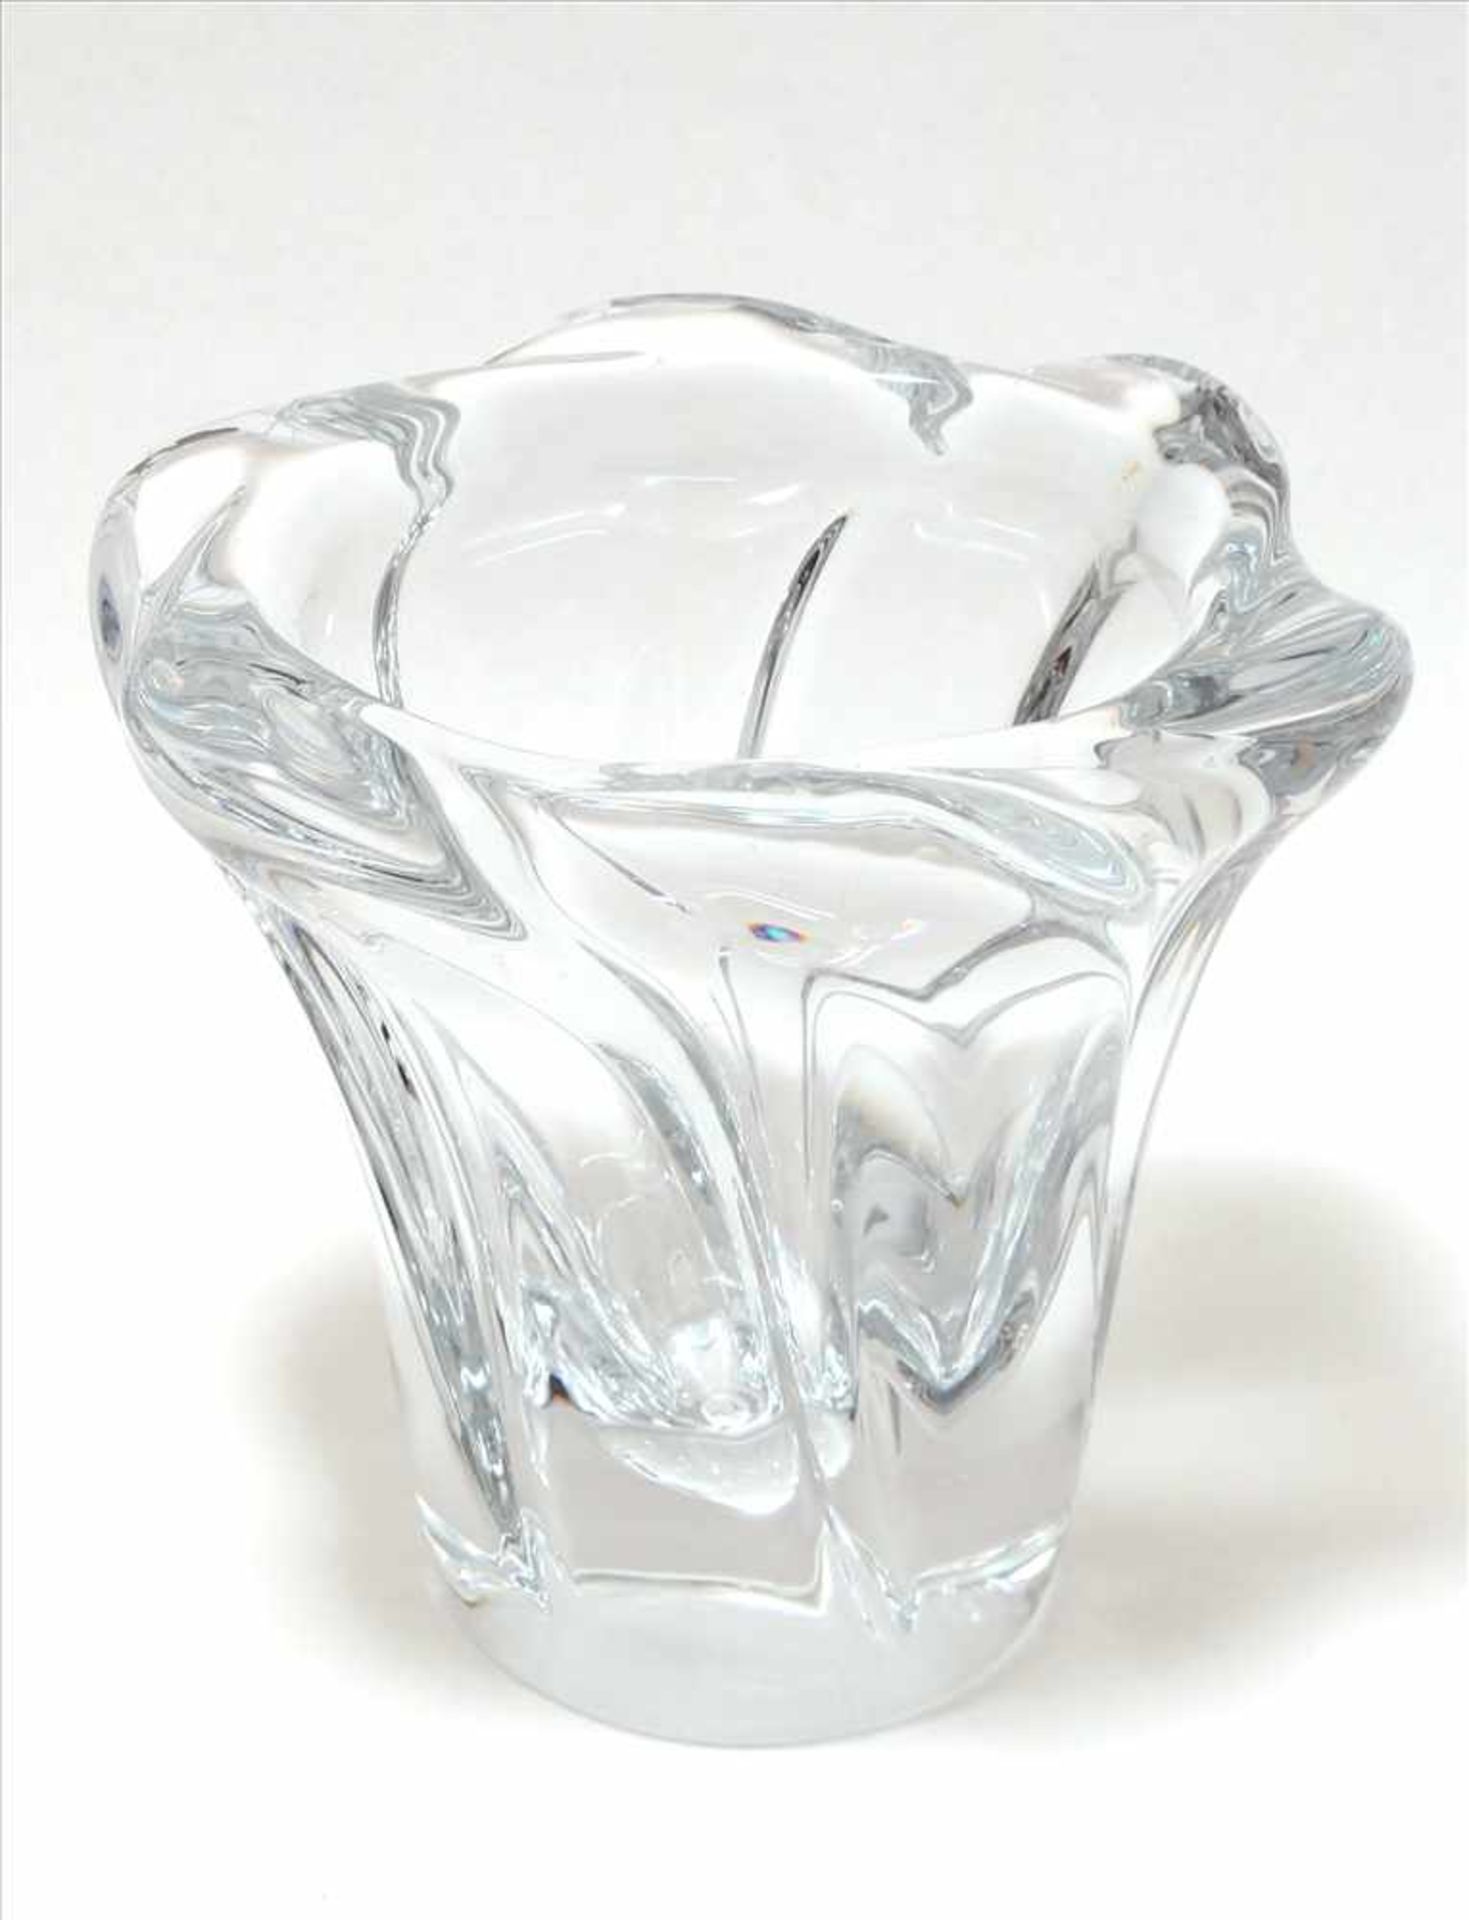 GlasvaseDaum France. Blütenform. Klarglas. Seitlich Ätzsignatur. Durchmesser ca. 15 x 12,5 cm, - Bild 2 aus 4